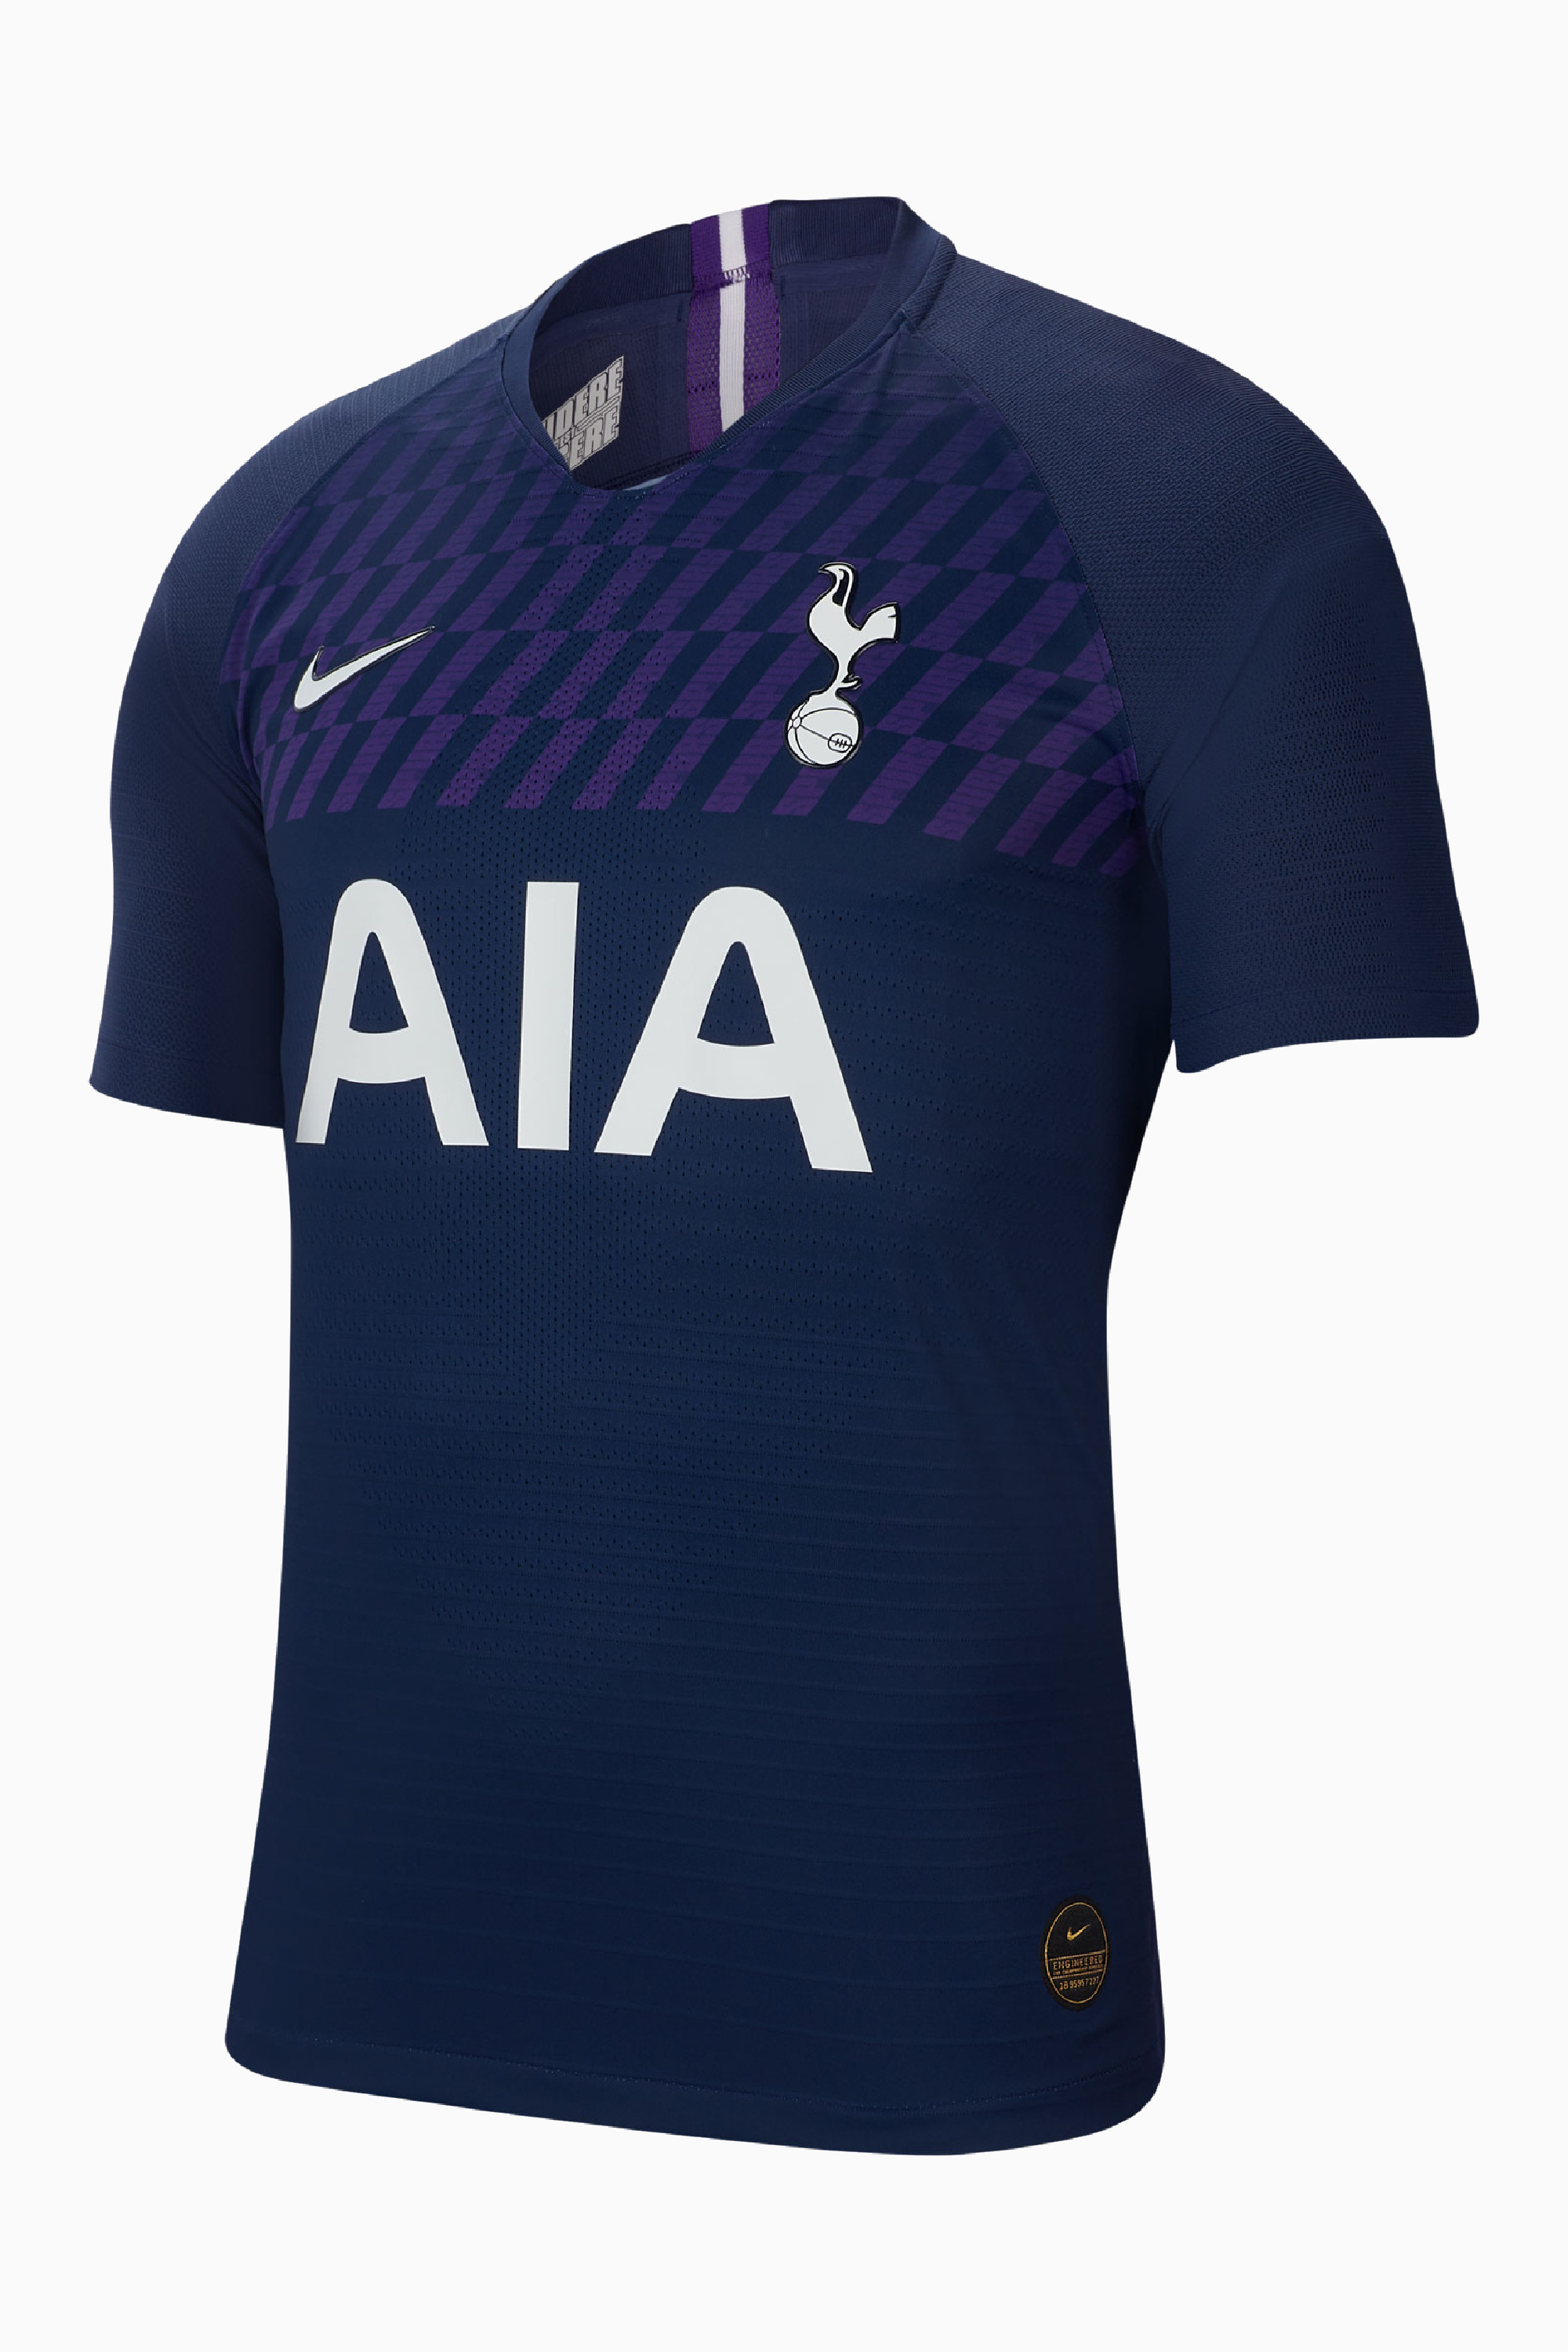 Learner Intention most Football Shirt Nike Tottenham Hotspur FC 19/20 Away Vapor Match | R-GOL.com  - Football boots & equipment